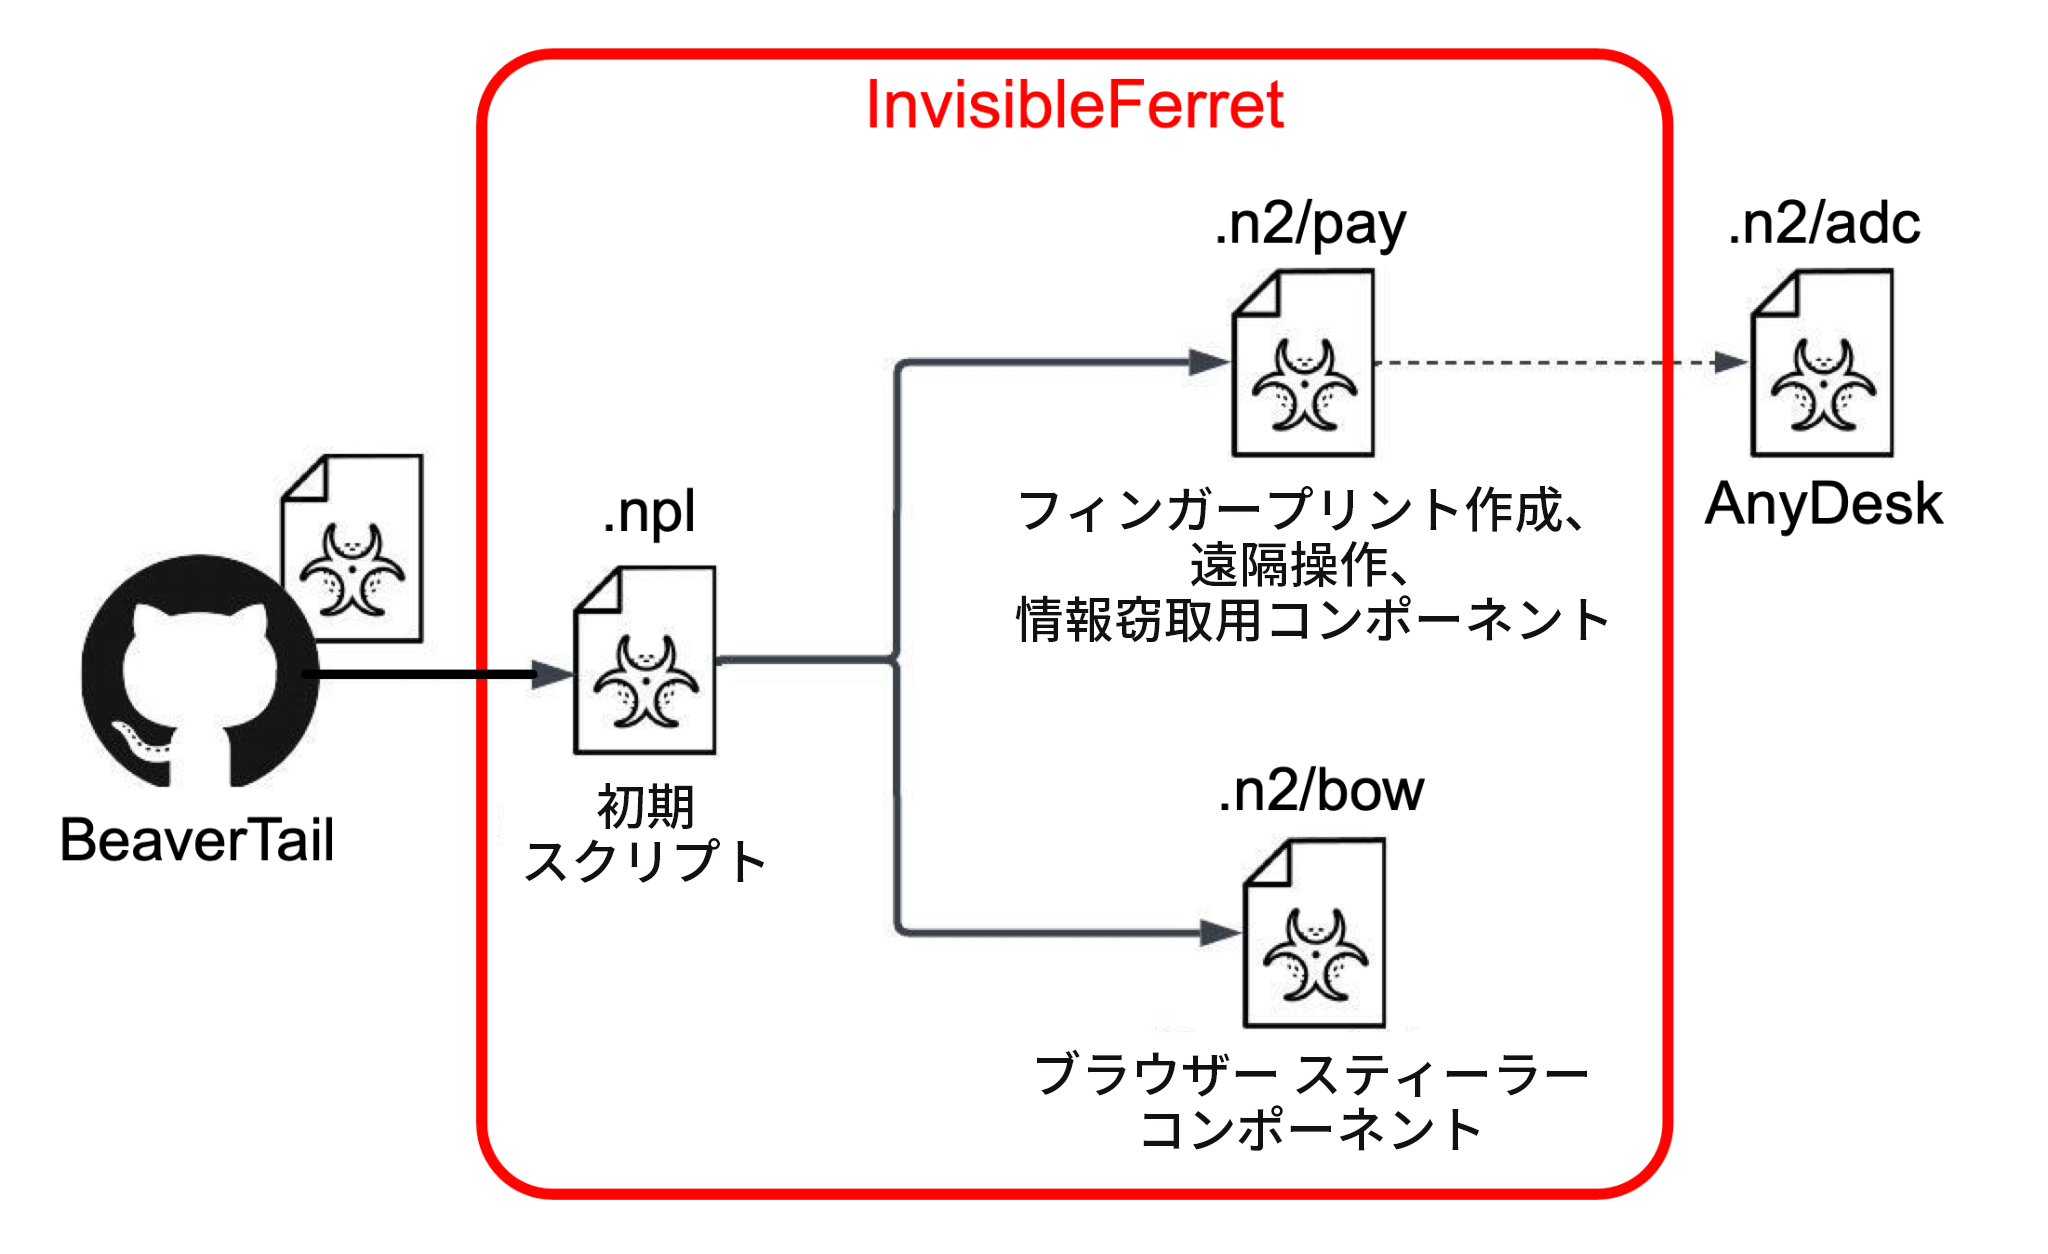 画像 5 は、InvisibleFerret がどのように機能するかを示す図です。BeaverTail の GitHub から .npl という初期スクリプトにつながり、この初期スクリプトは 2 つに枝分かれしています。1 つの枝はフィンガープリント、遠隔操作、情報窃取コンポーネントを含む .n2/pay です。このブランチは .n2/adc による AnyDesk で終了しています。2 本めのブランチは .n2/bow で、これはブラウザー窃取コンポーネントです。 